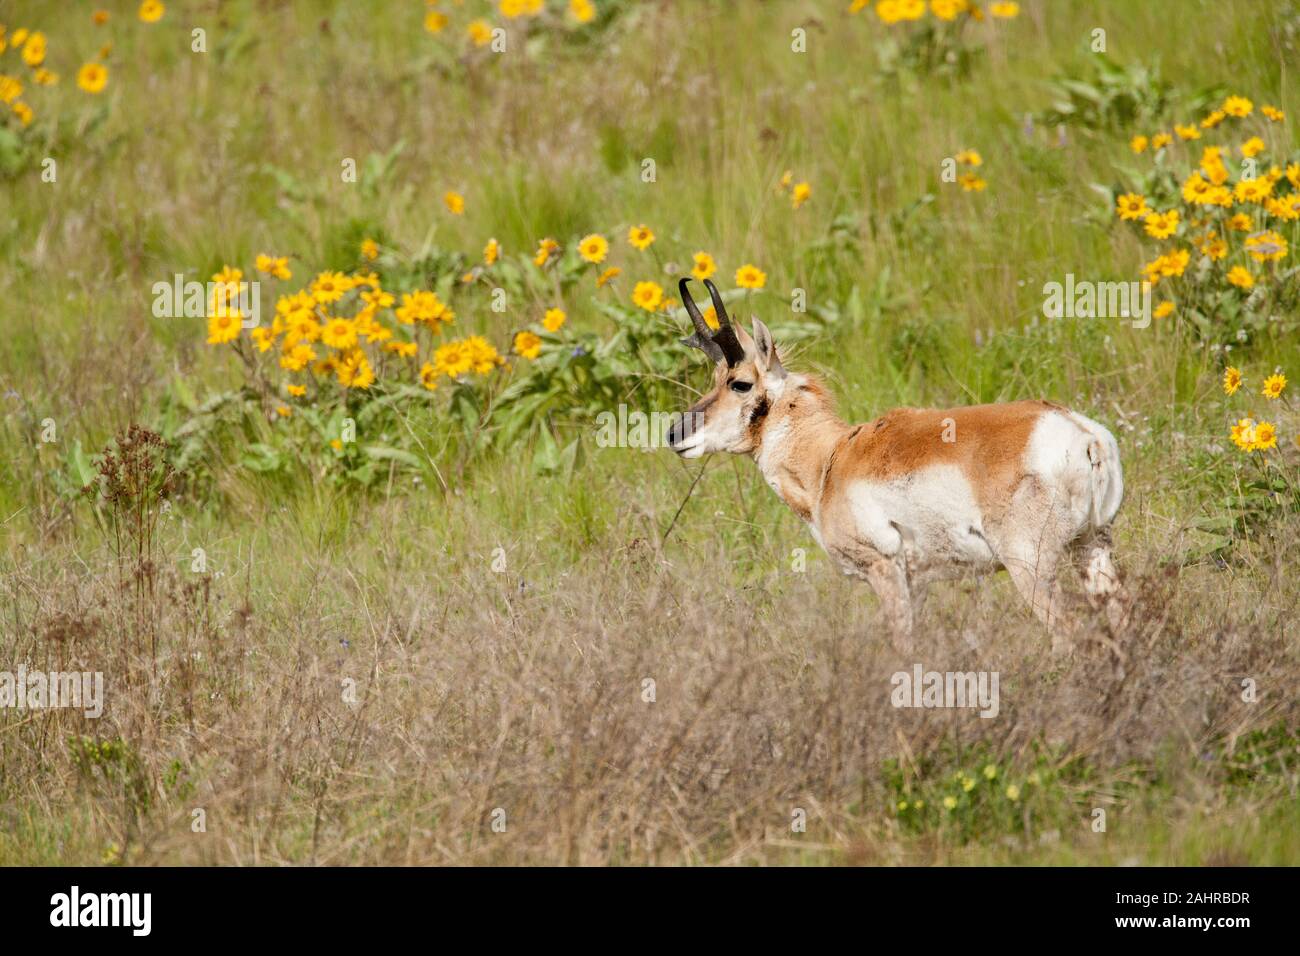 National Bison Range, Montana, USA. L'antilocapre buck debout dans un champ de fleurs sauvages Balsamorhize à feuilles de flèche. Banque D'Images